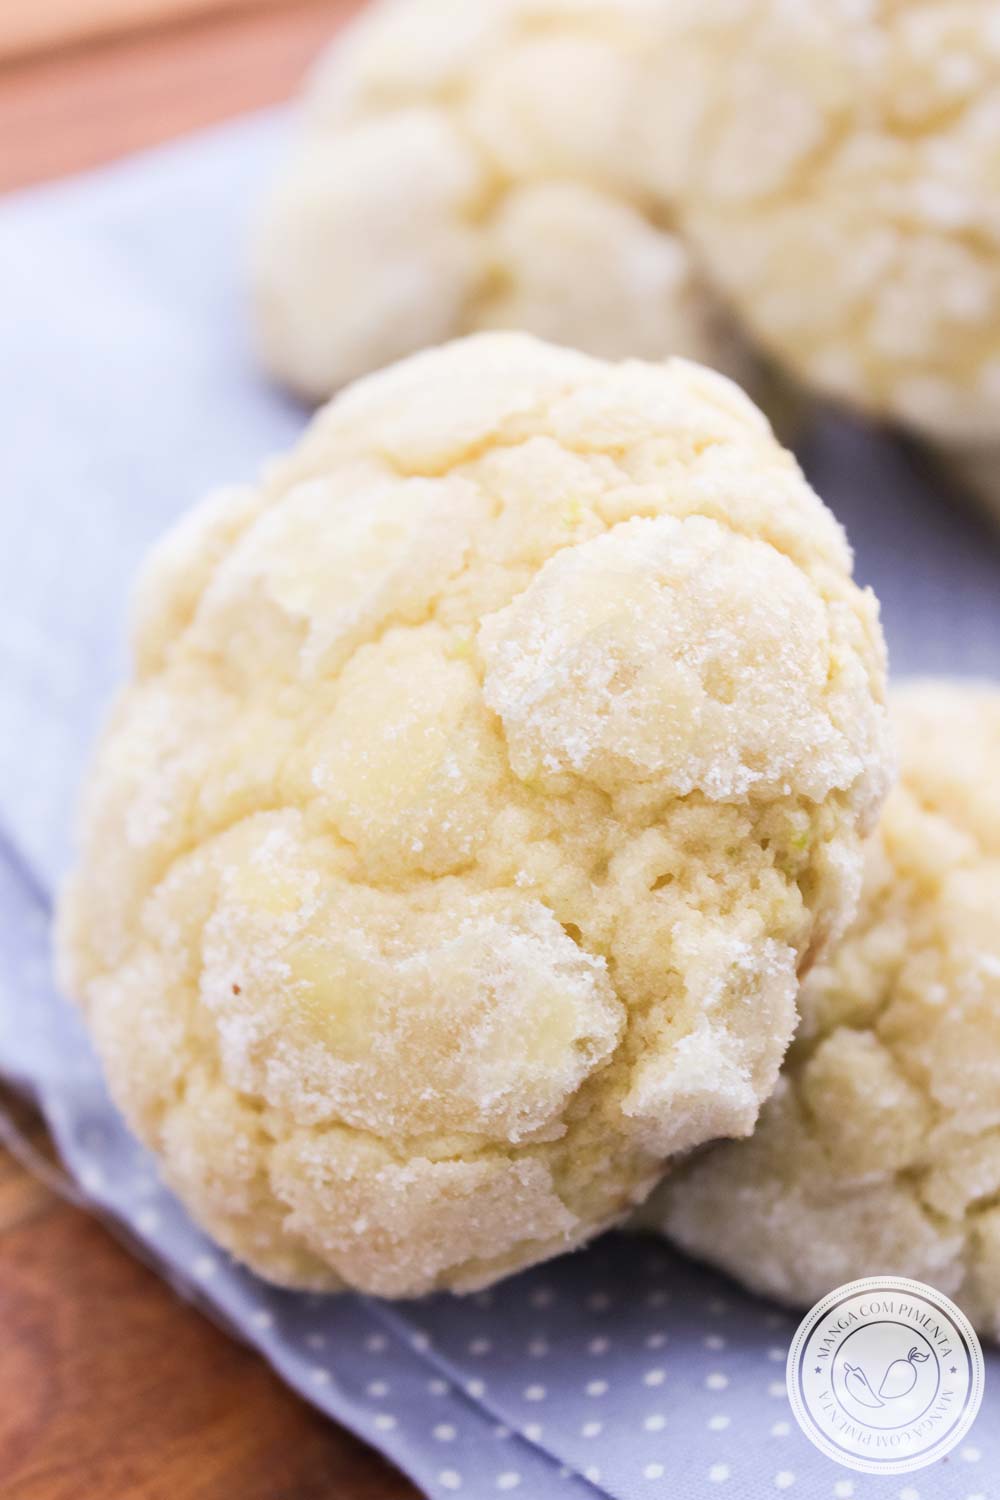 Crinkle Cookies de Limão - um delicioso biscoito para servir no chá da tarde com os amigos!